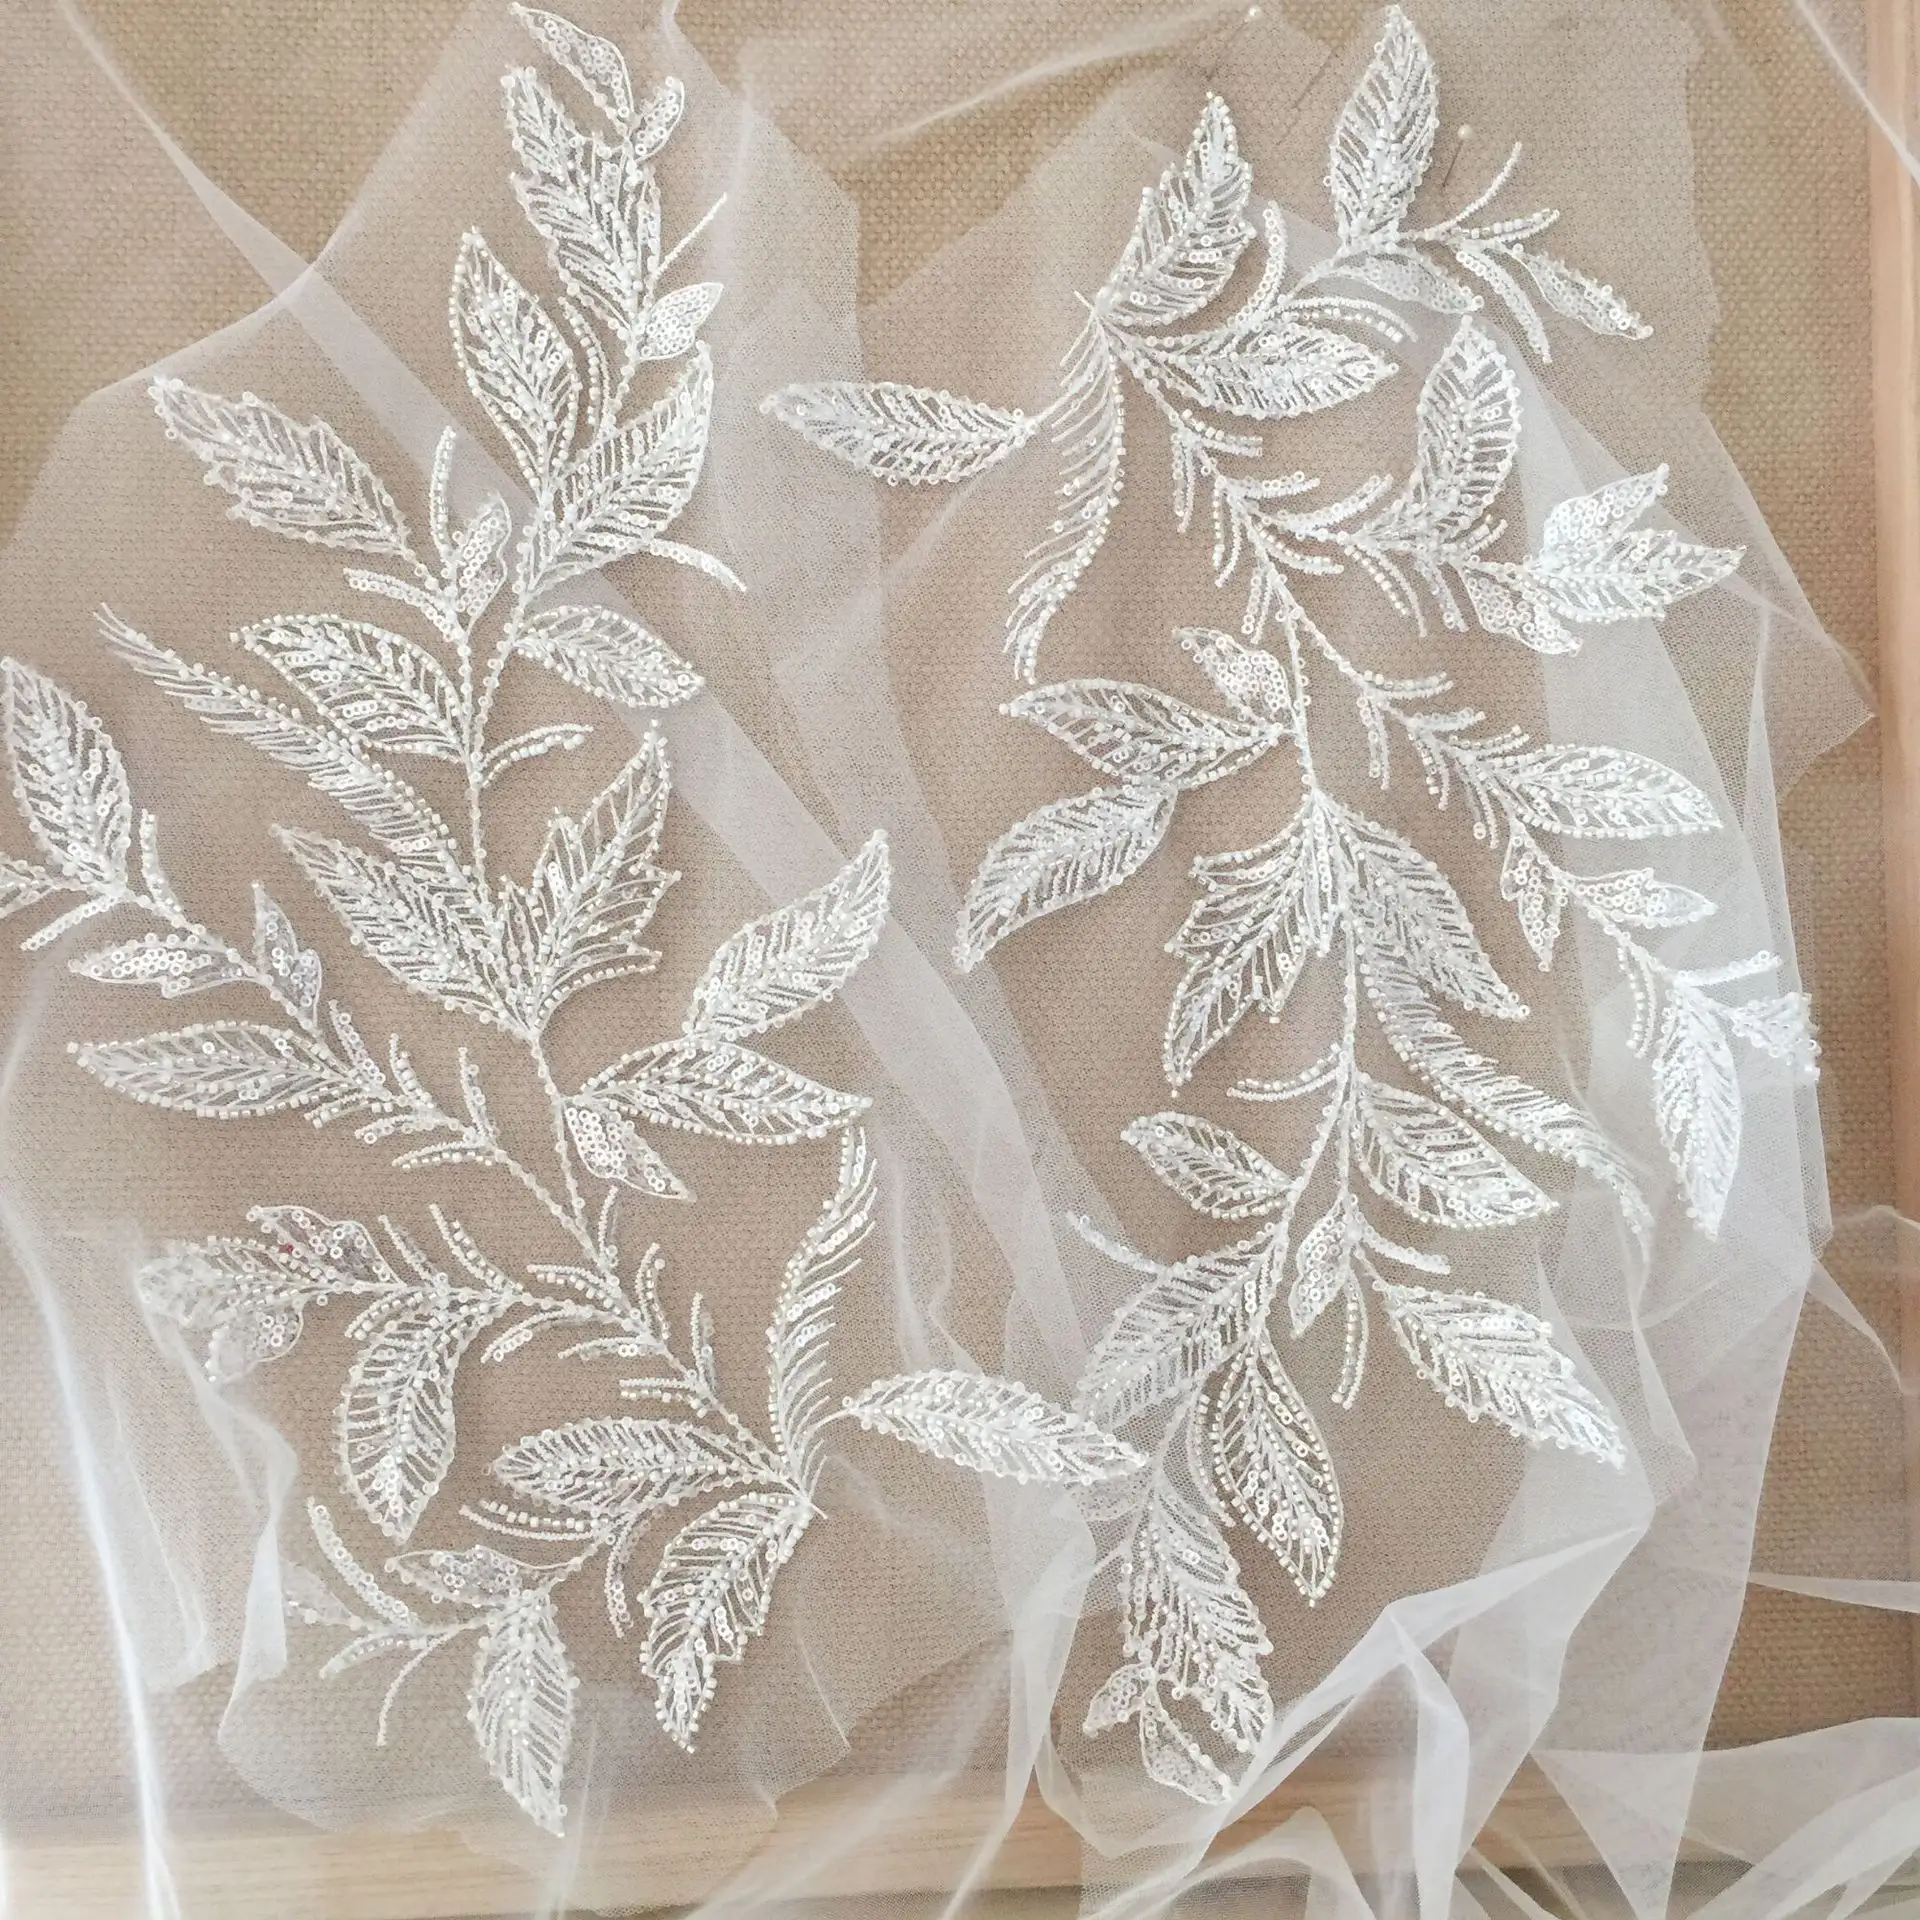 LS829ホワイトビーズスパンコール刺繍植物パターン葉花服パッチブライダルウェディングドレス装飾アップリケパッチ